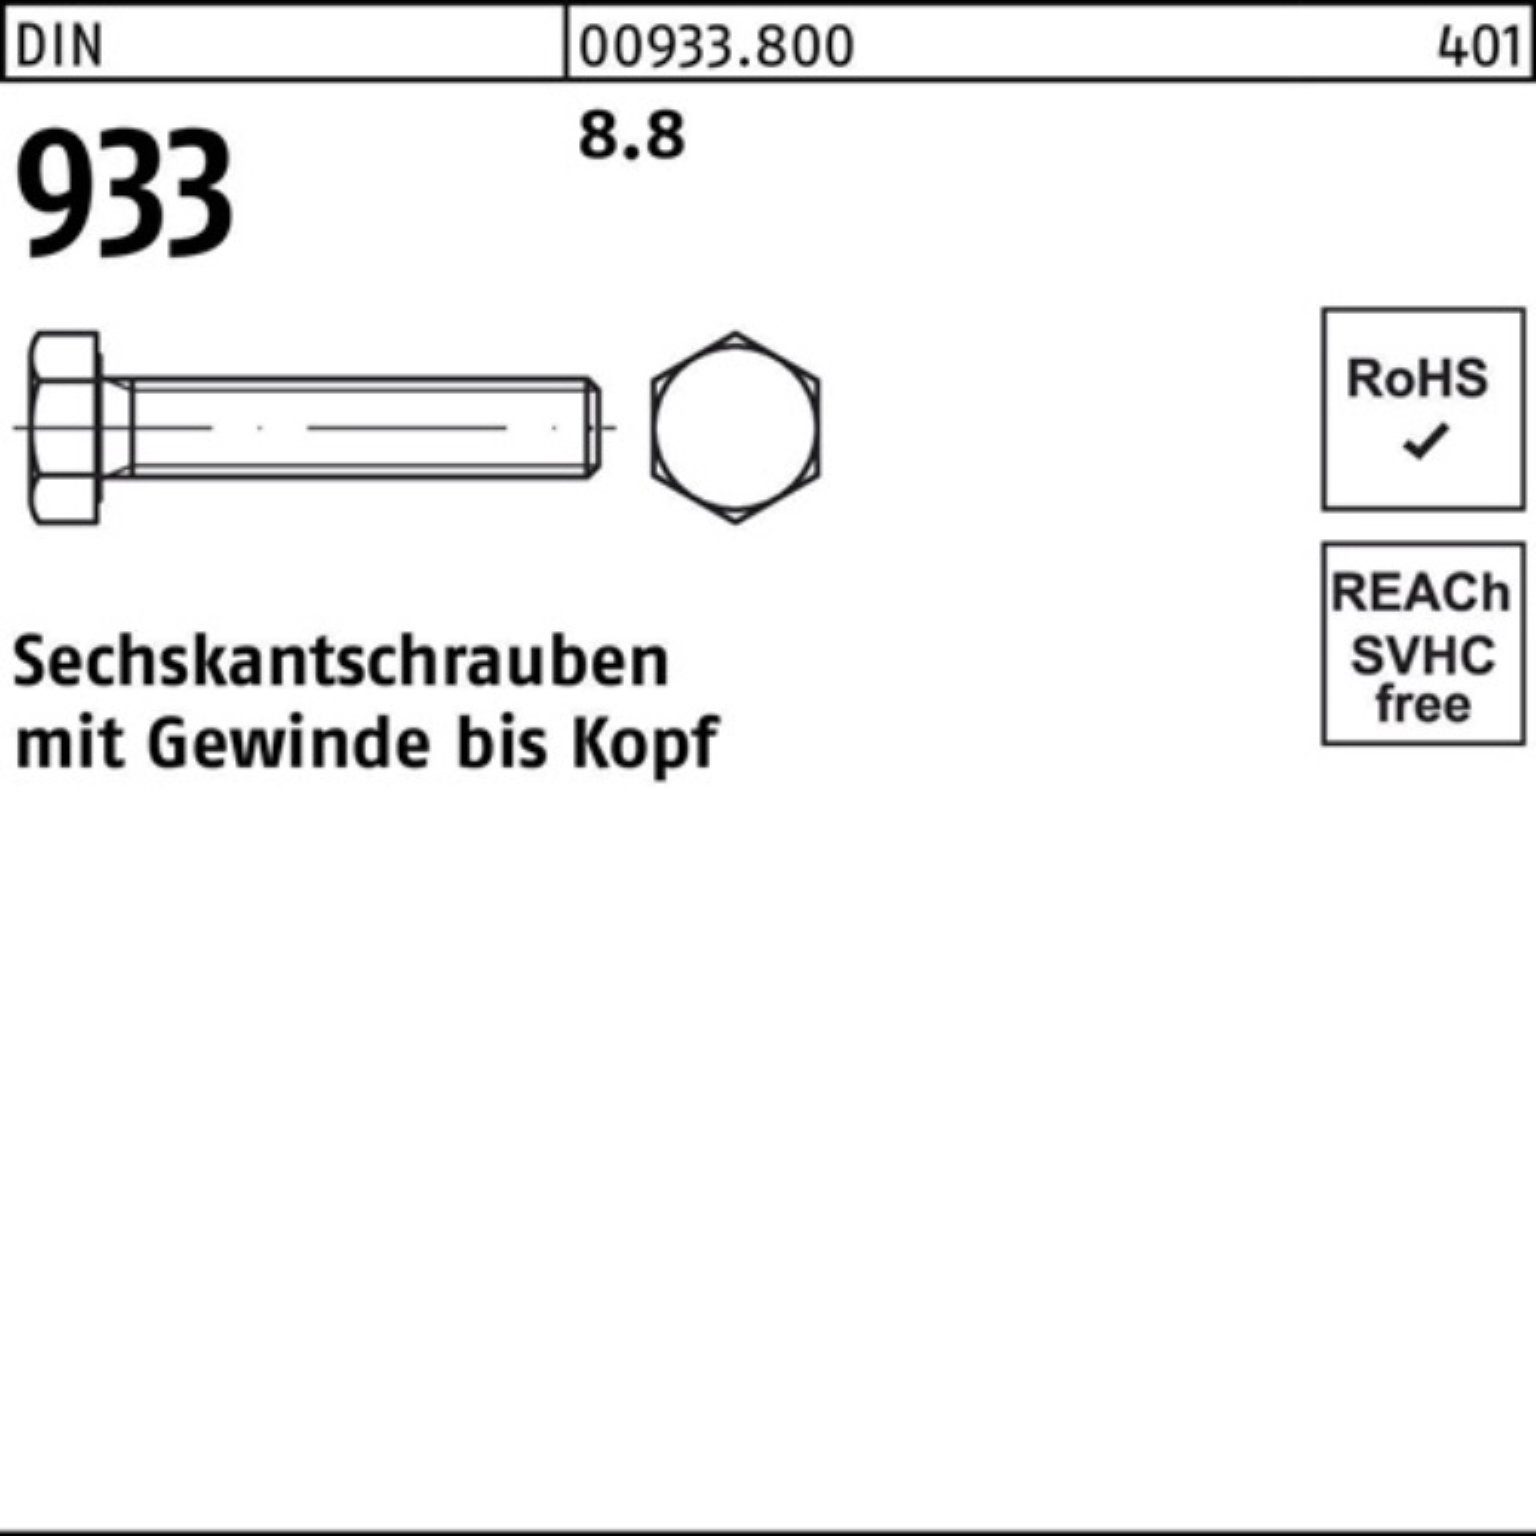 Reyher Sechskantschraube Pack 933 Sechskantschraube VG 12 100er Stück 50 DIN 933 M16x DIN 8.8